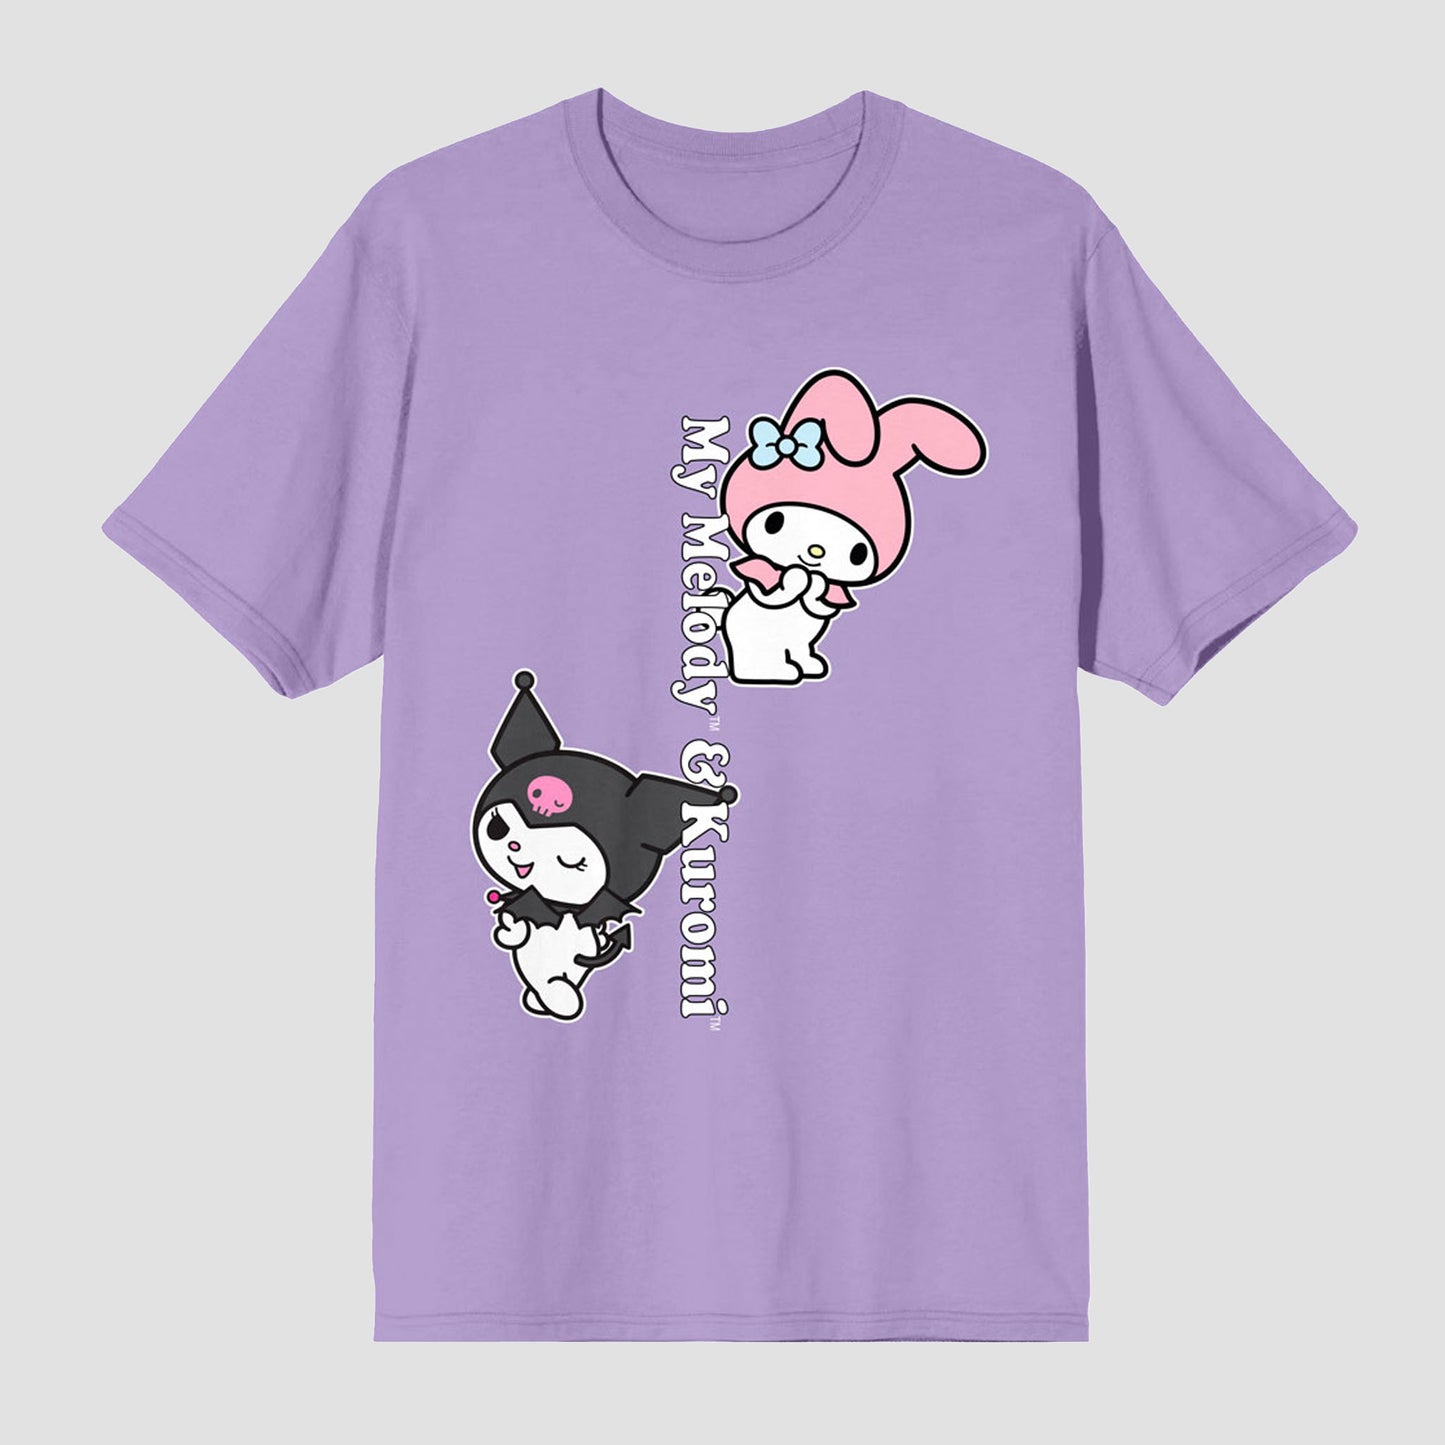 https://mycollectorsoutpost.com/cdn/shop/files/kuromi-my-melody-hello-kitty-friends-sanrio-unisex-shirt2_1445x.jpg?v=1693931452